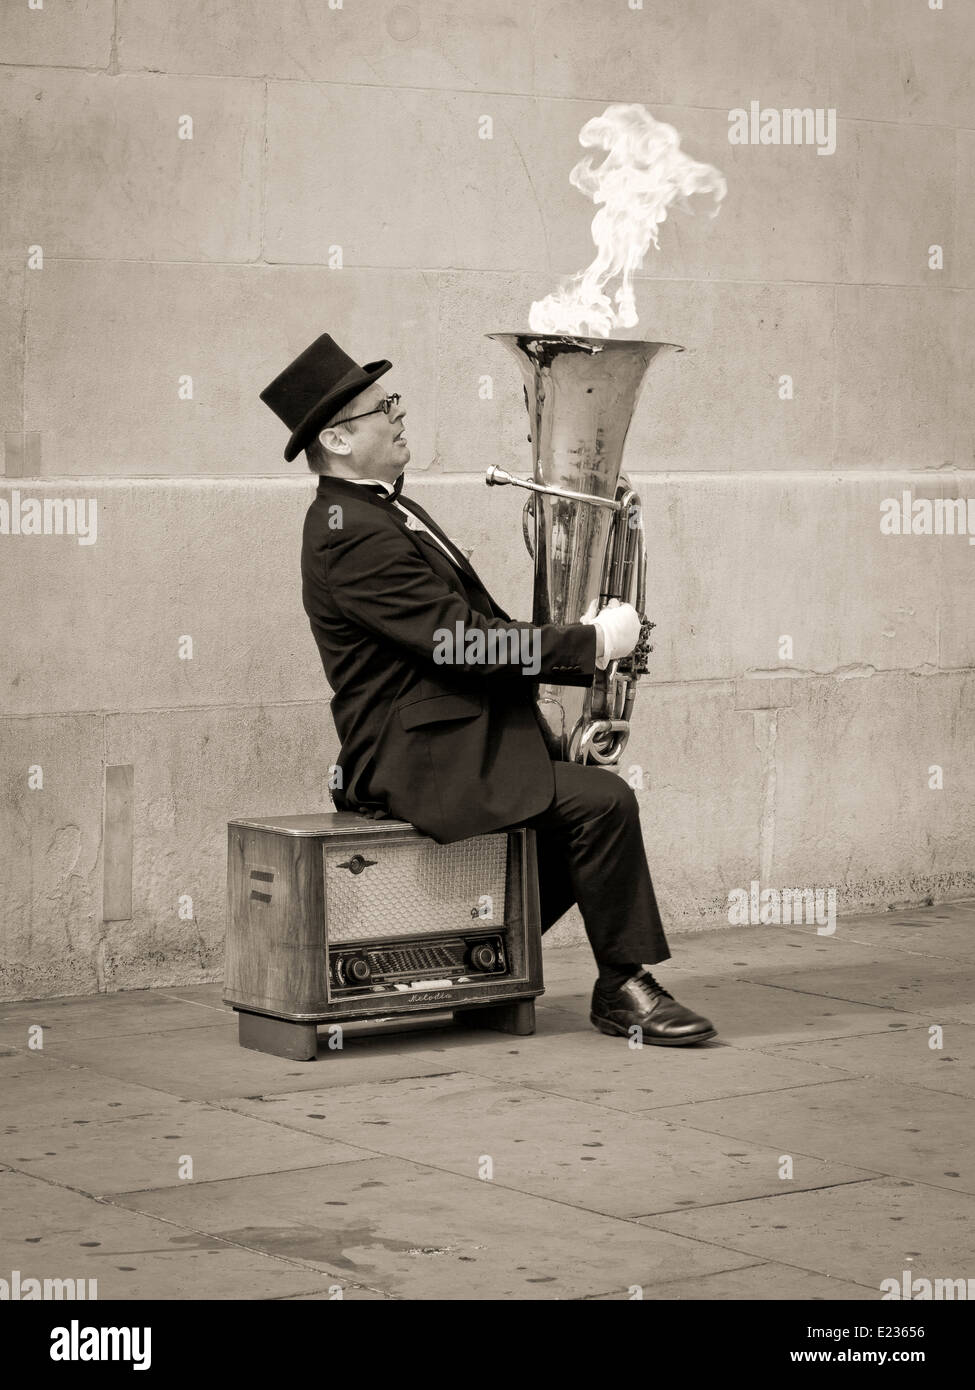 Musicien ambulant, Christopher Werkowicz jouant flaming tuba assis sur une vieille radio contre un mur de pierre en sépia Banque D'Images